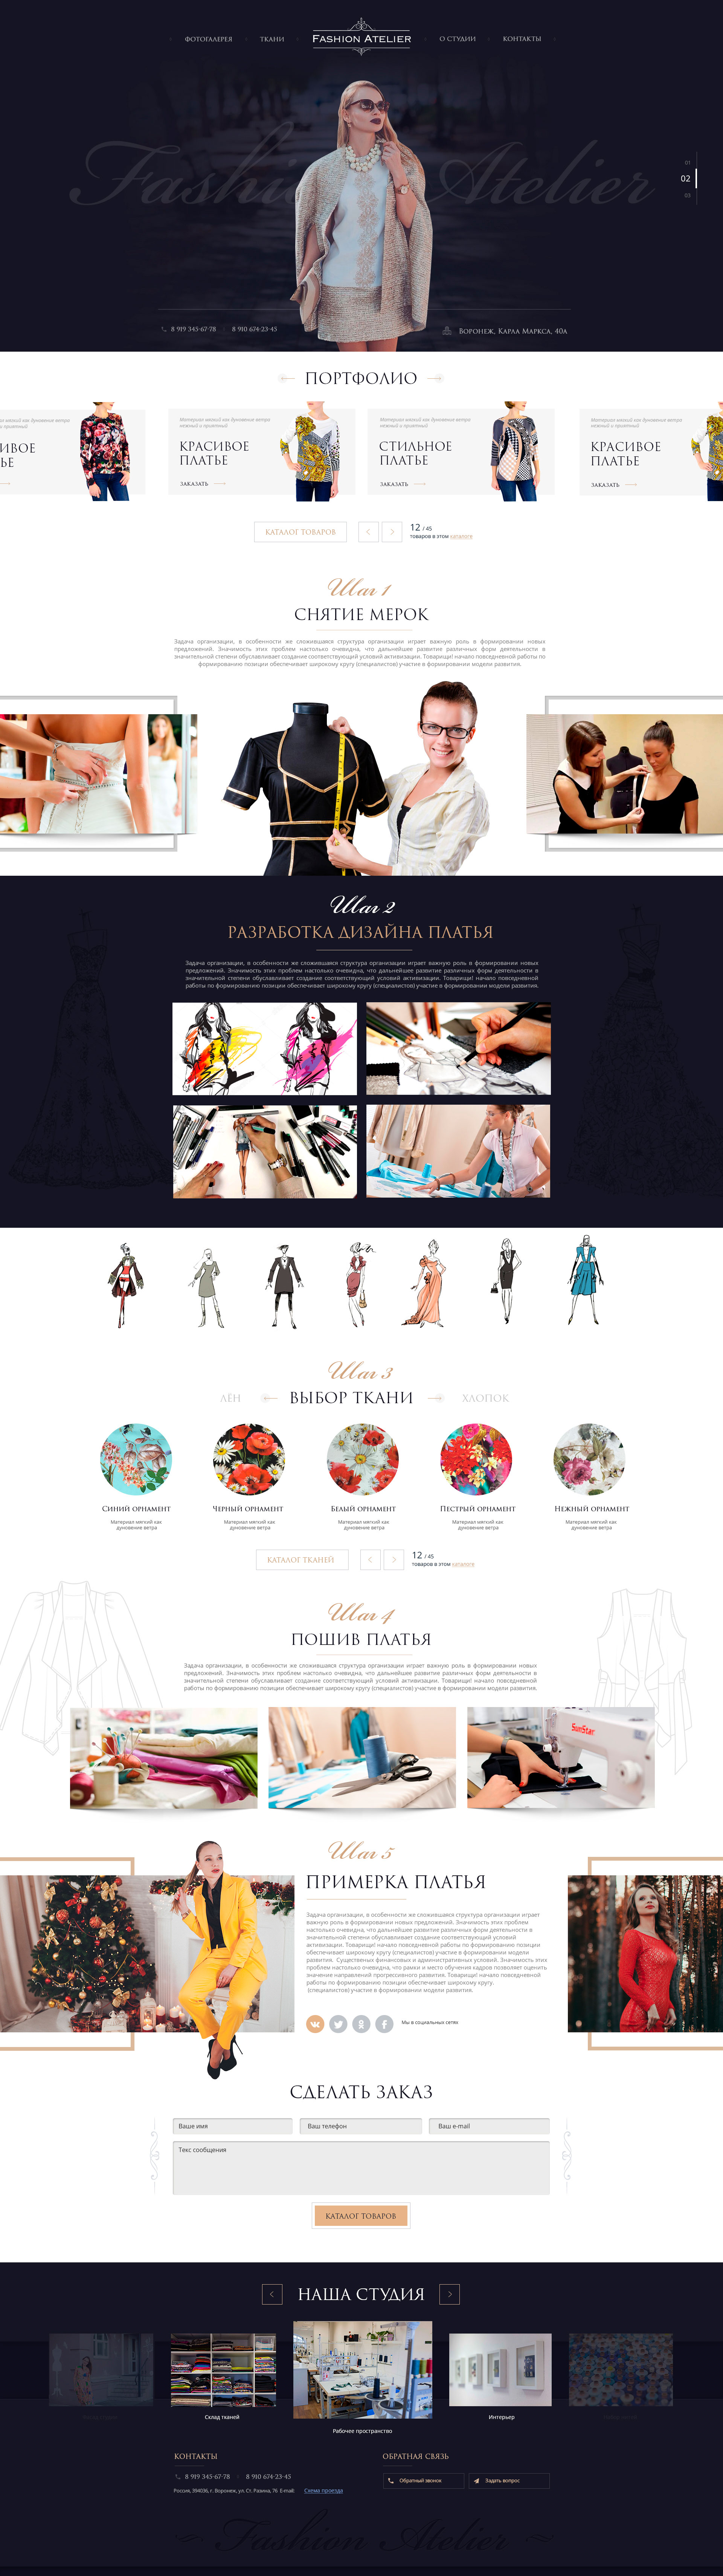 примеры сайтов производства Fashion Atelier 1920 px